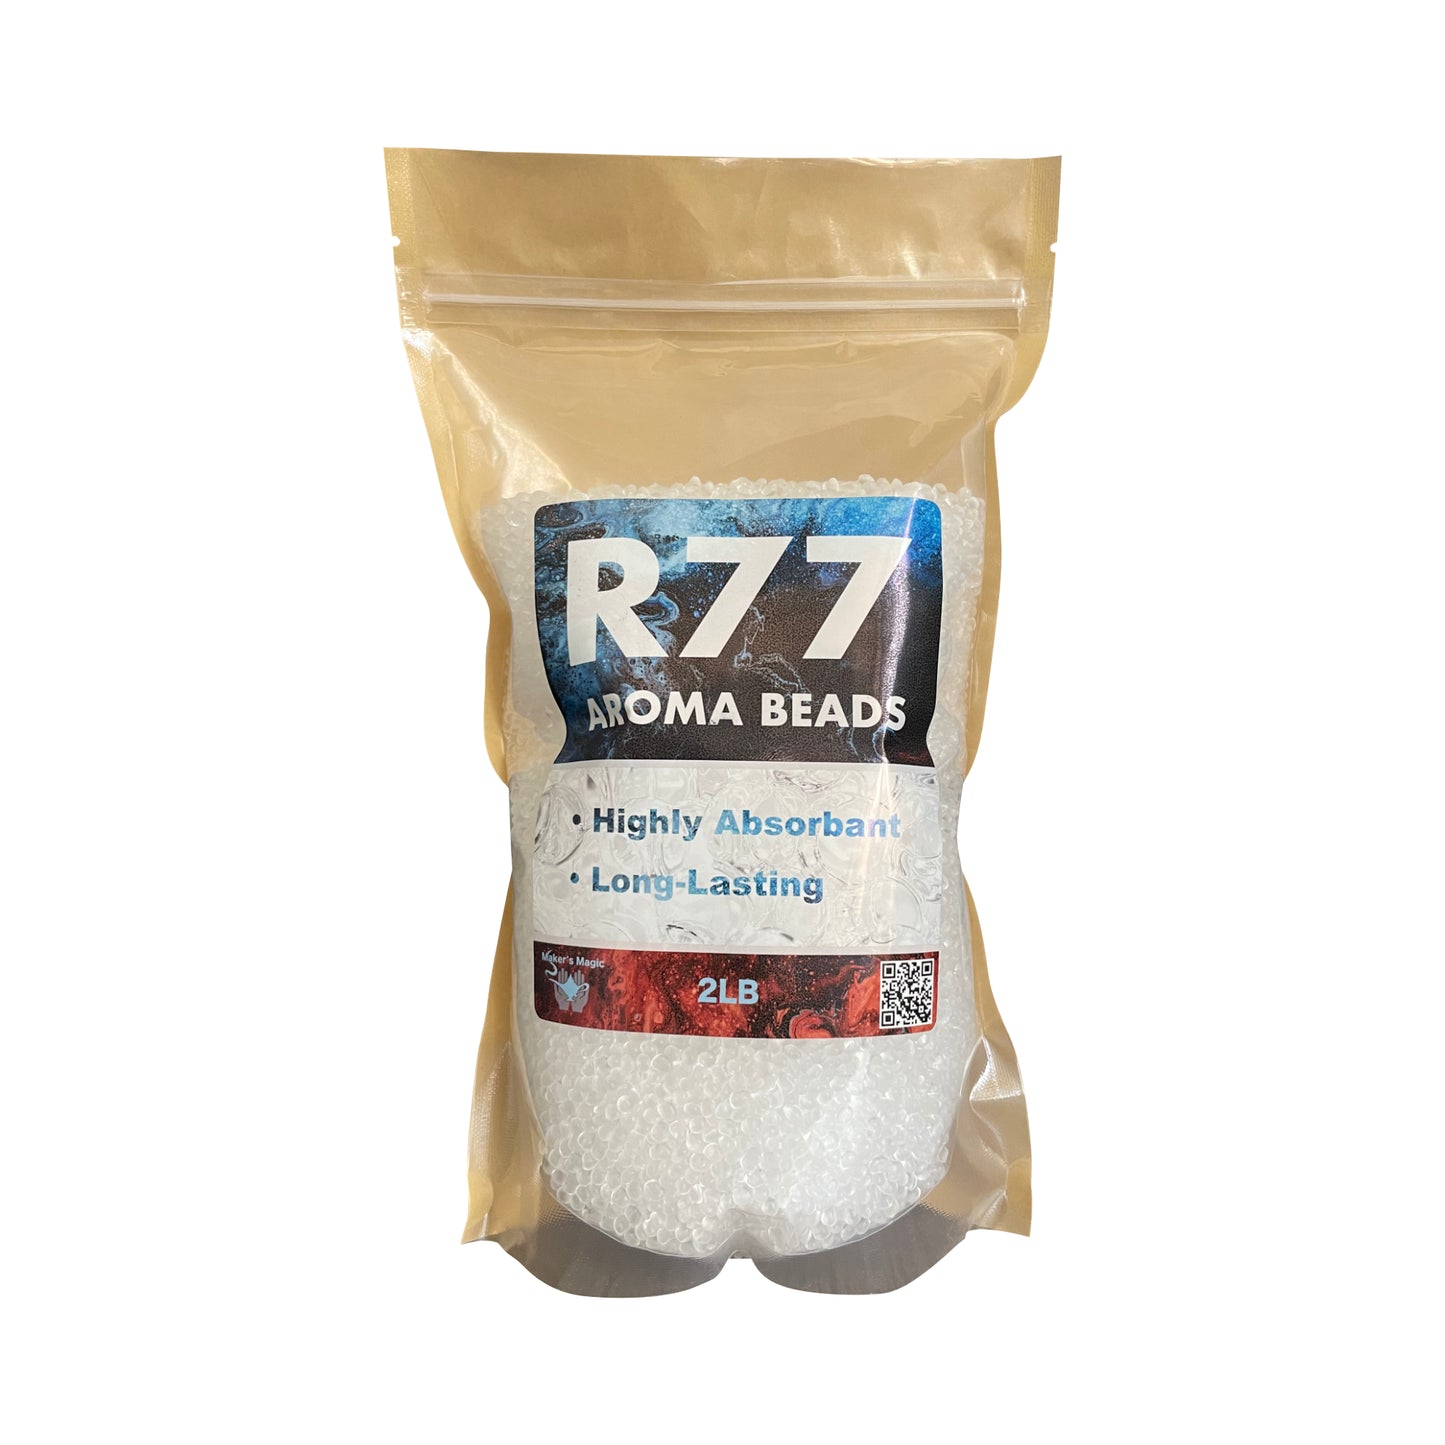 R77 Aroma Beads